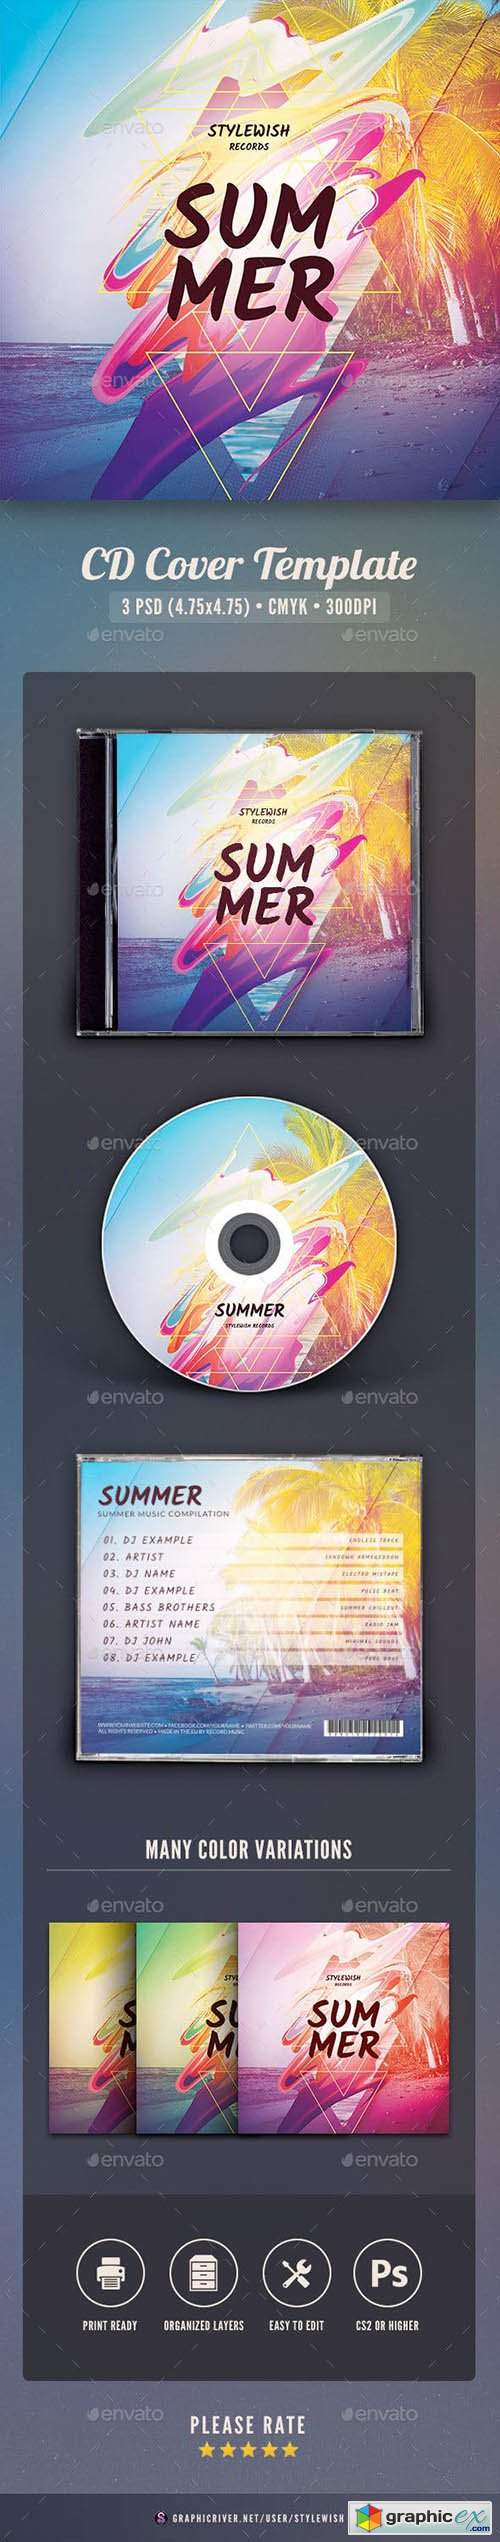 Summer CD Cover Artwork 23466149